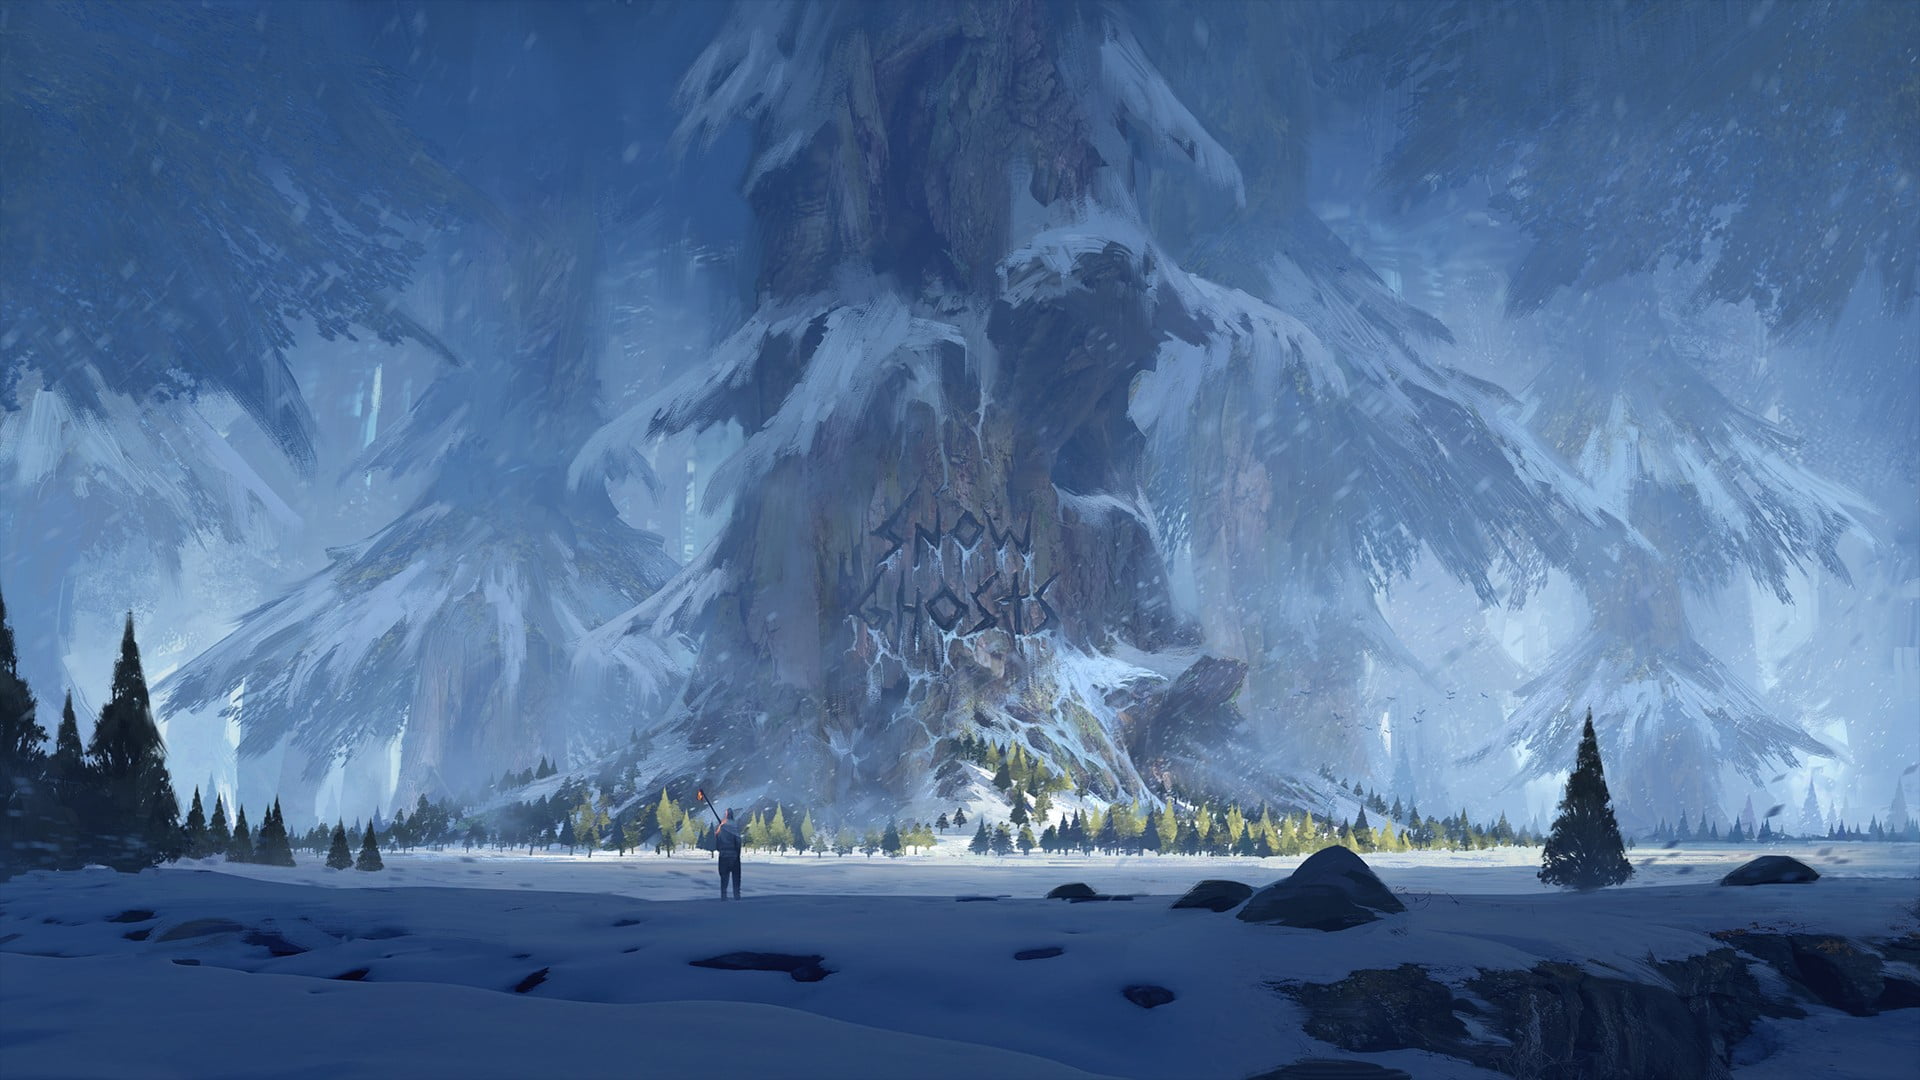 Snow Ghosts digital wallpaper, trees, winter, forest, fan art